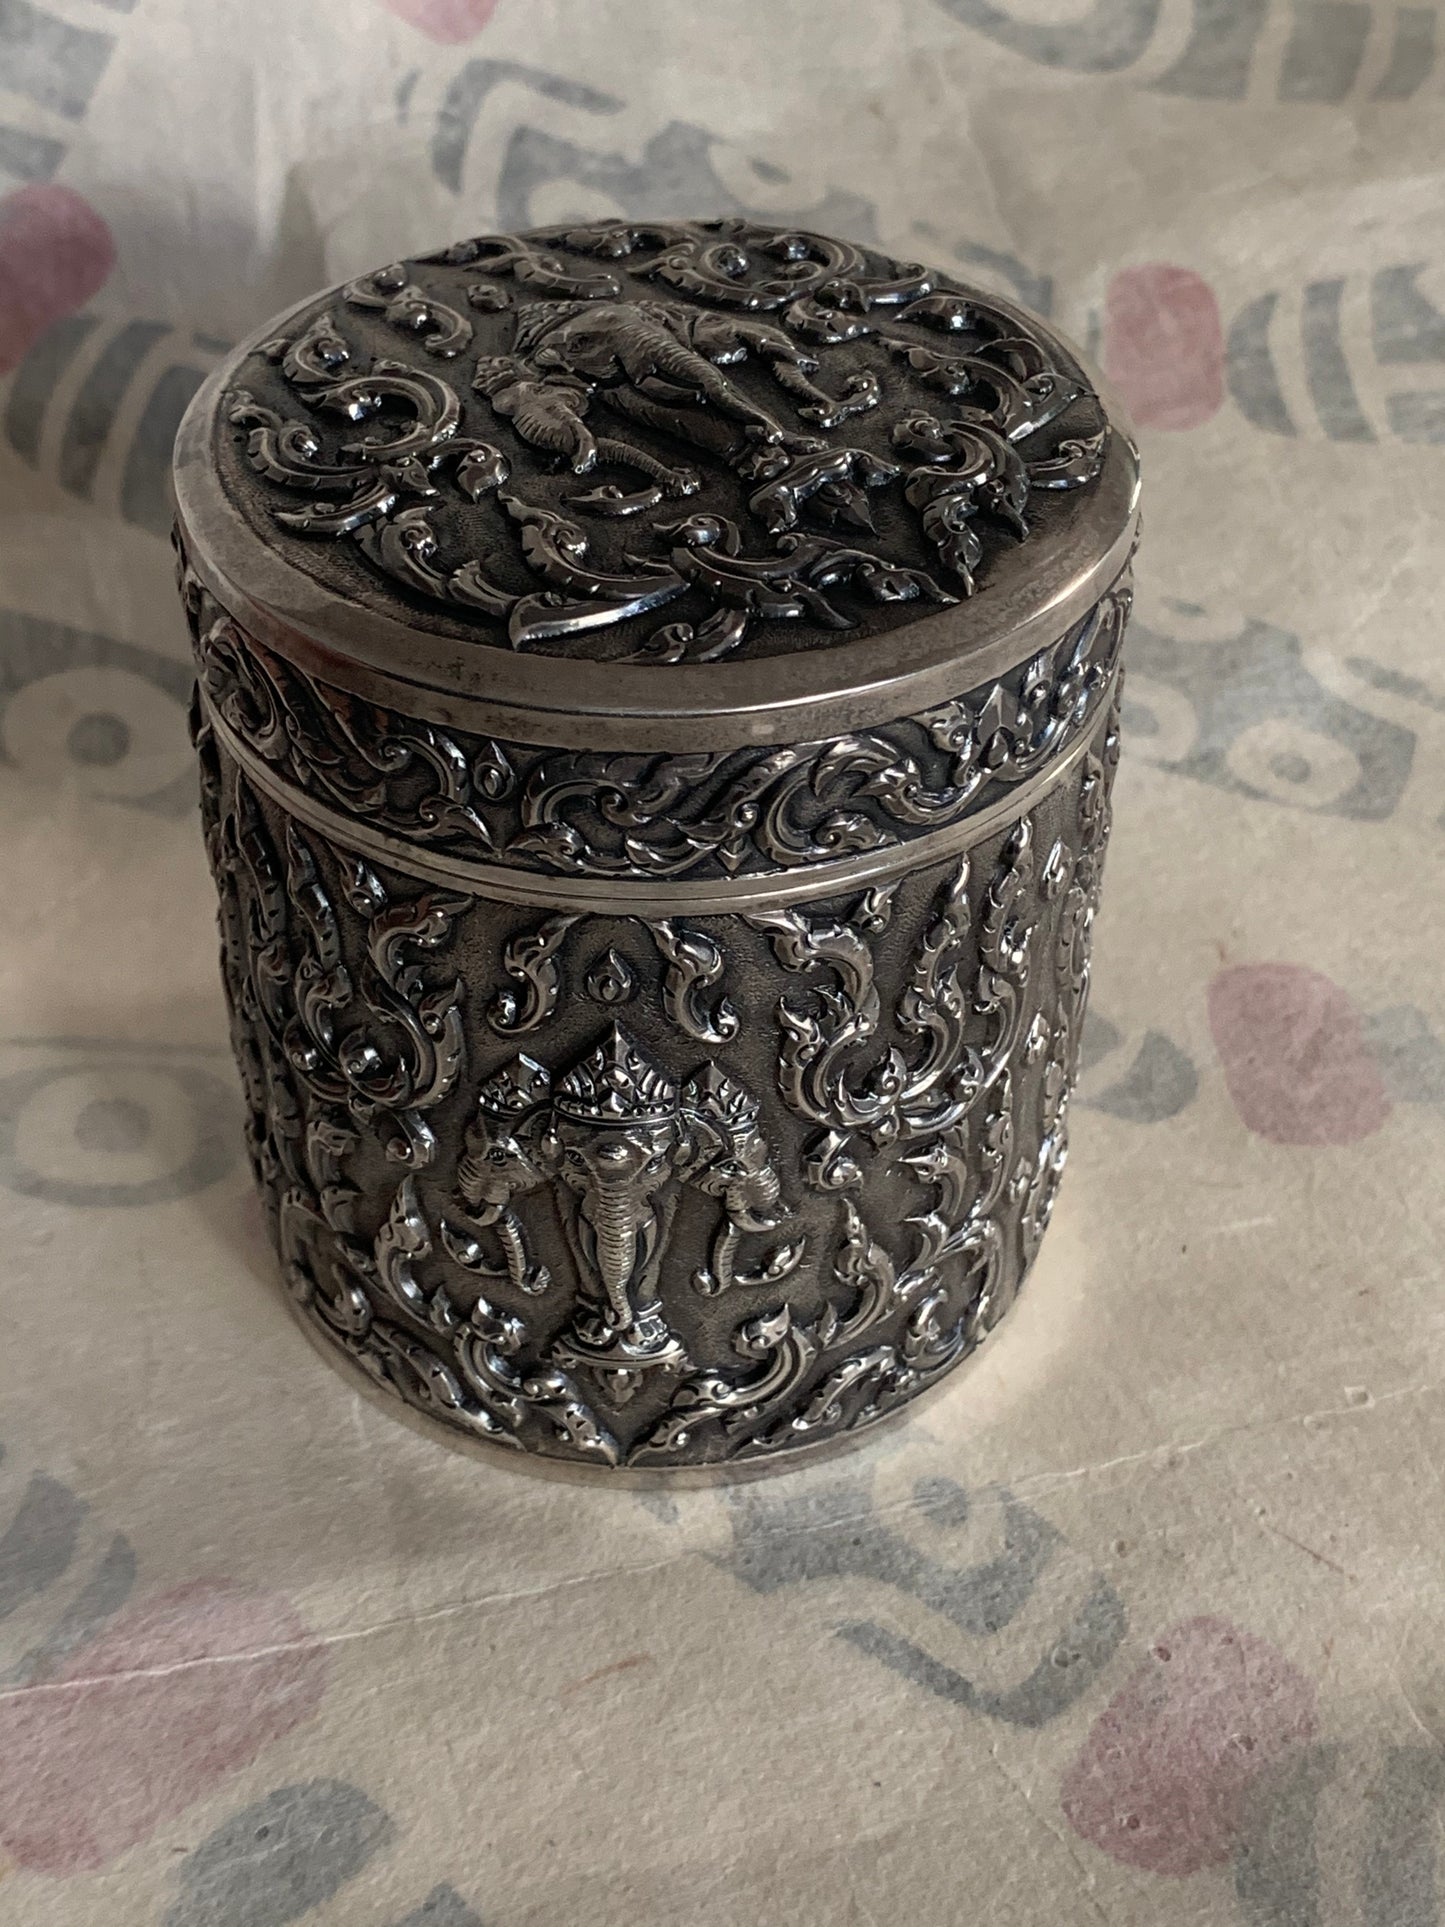 An antique cylindrical Thai silver box